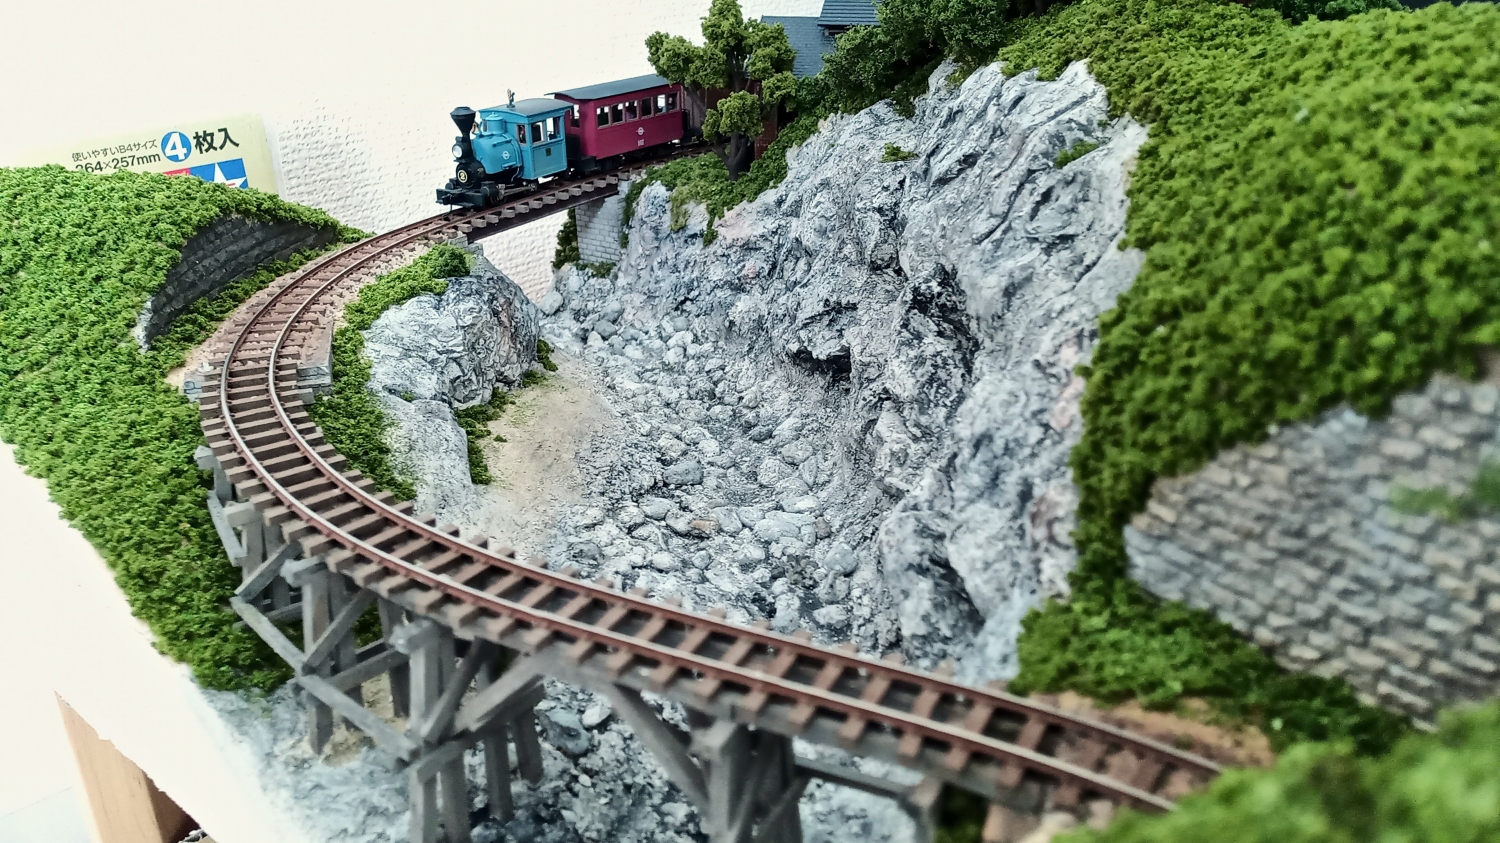 ナローゲージ ミニレイアウト 七篠軌道 その3 Chihiroのブログ 模型鉄道の世界